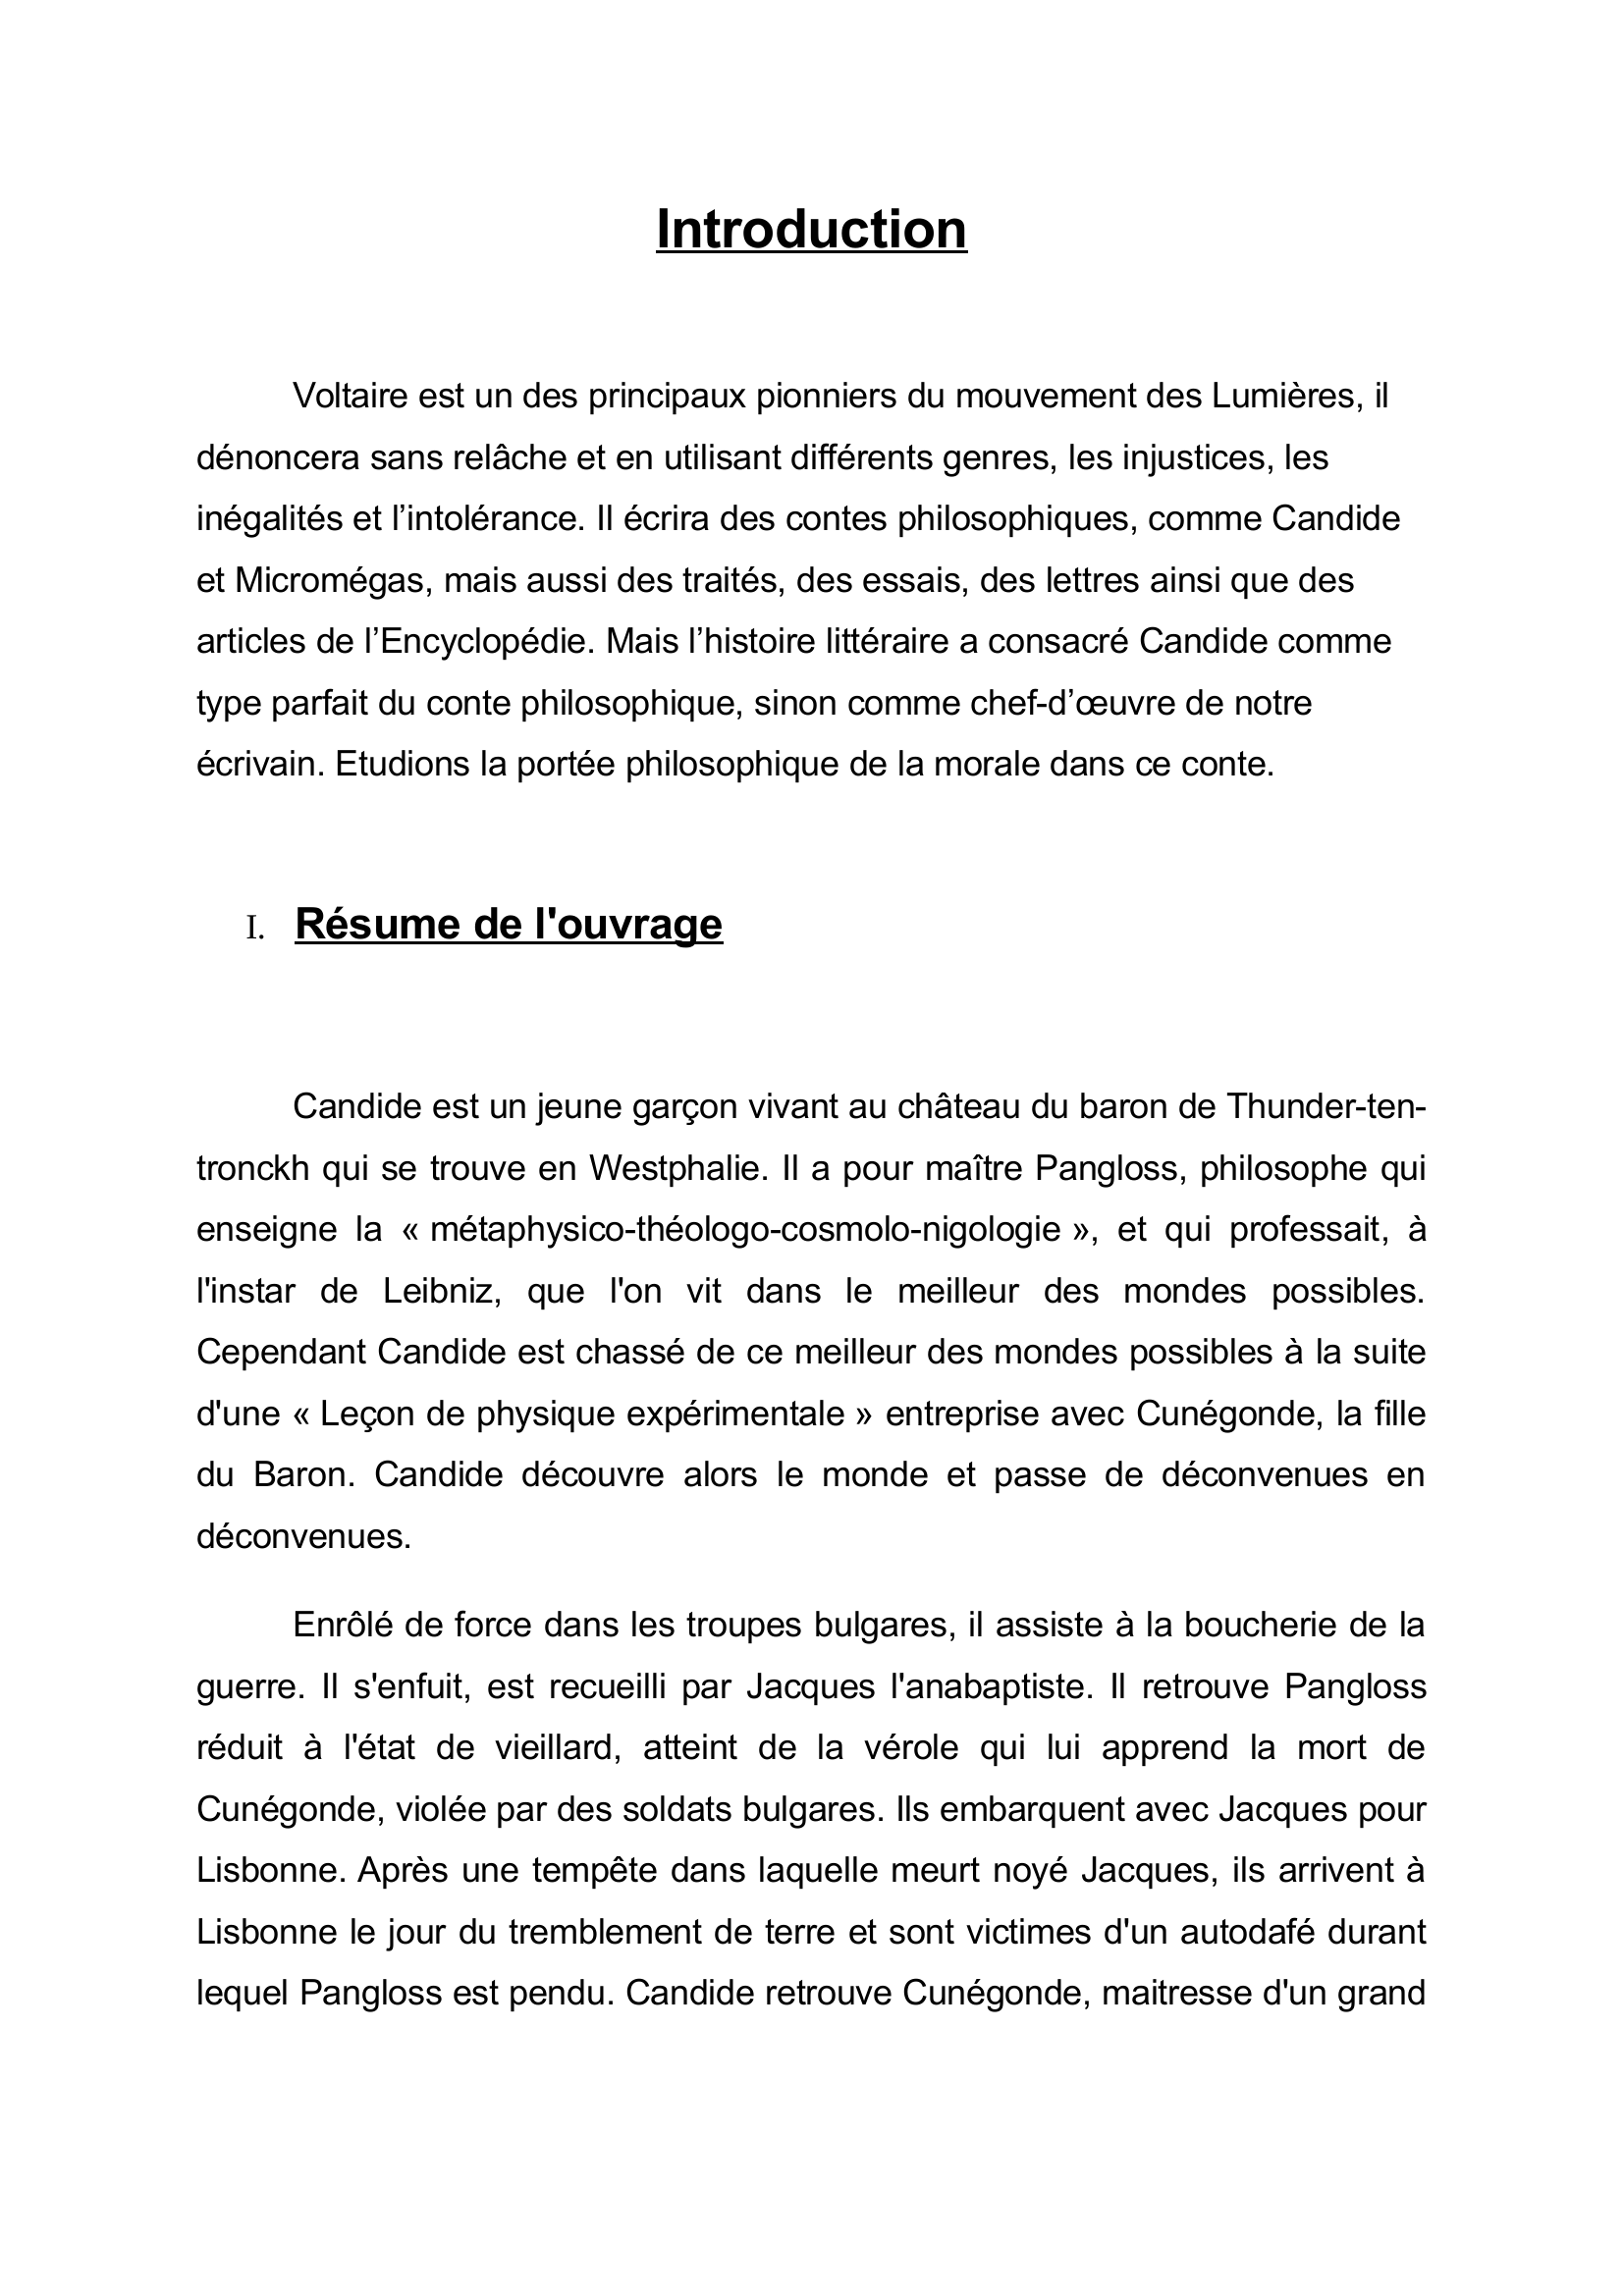 Prévisualisation du document porté philosophique de la morale de Candide de Voltaire